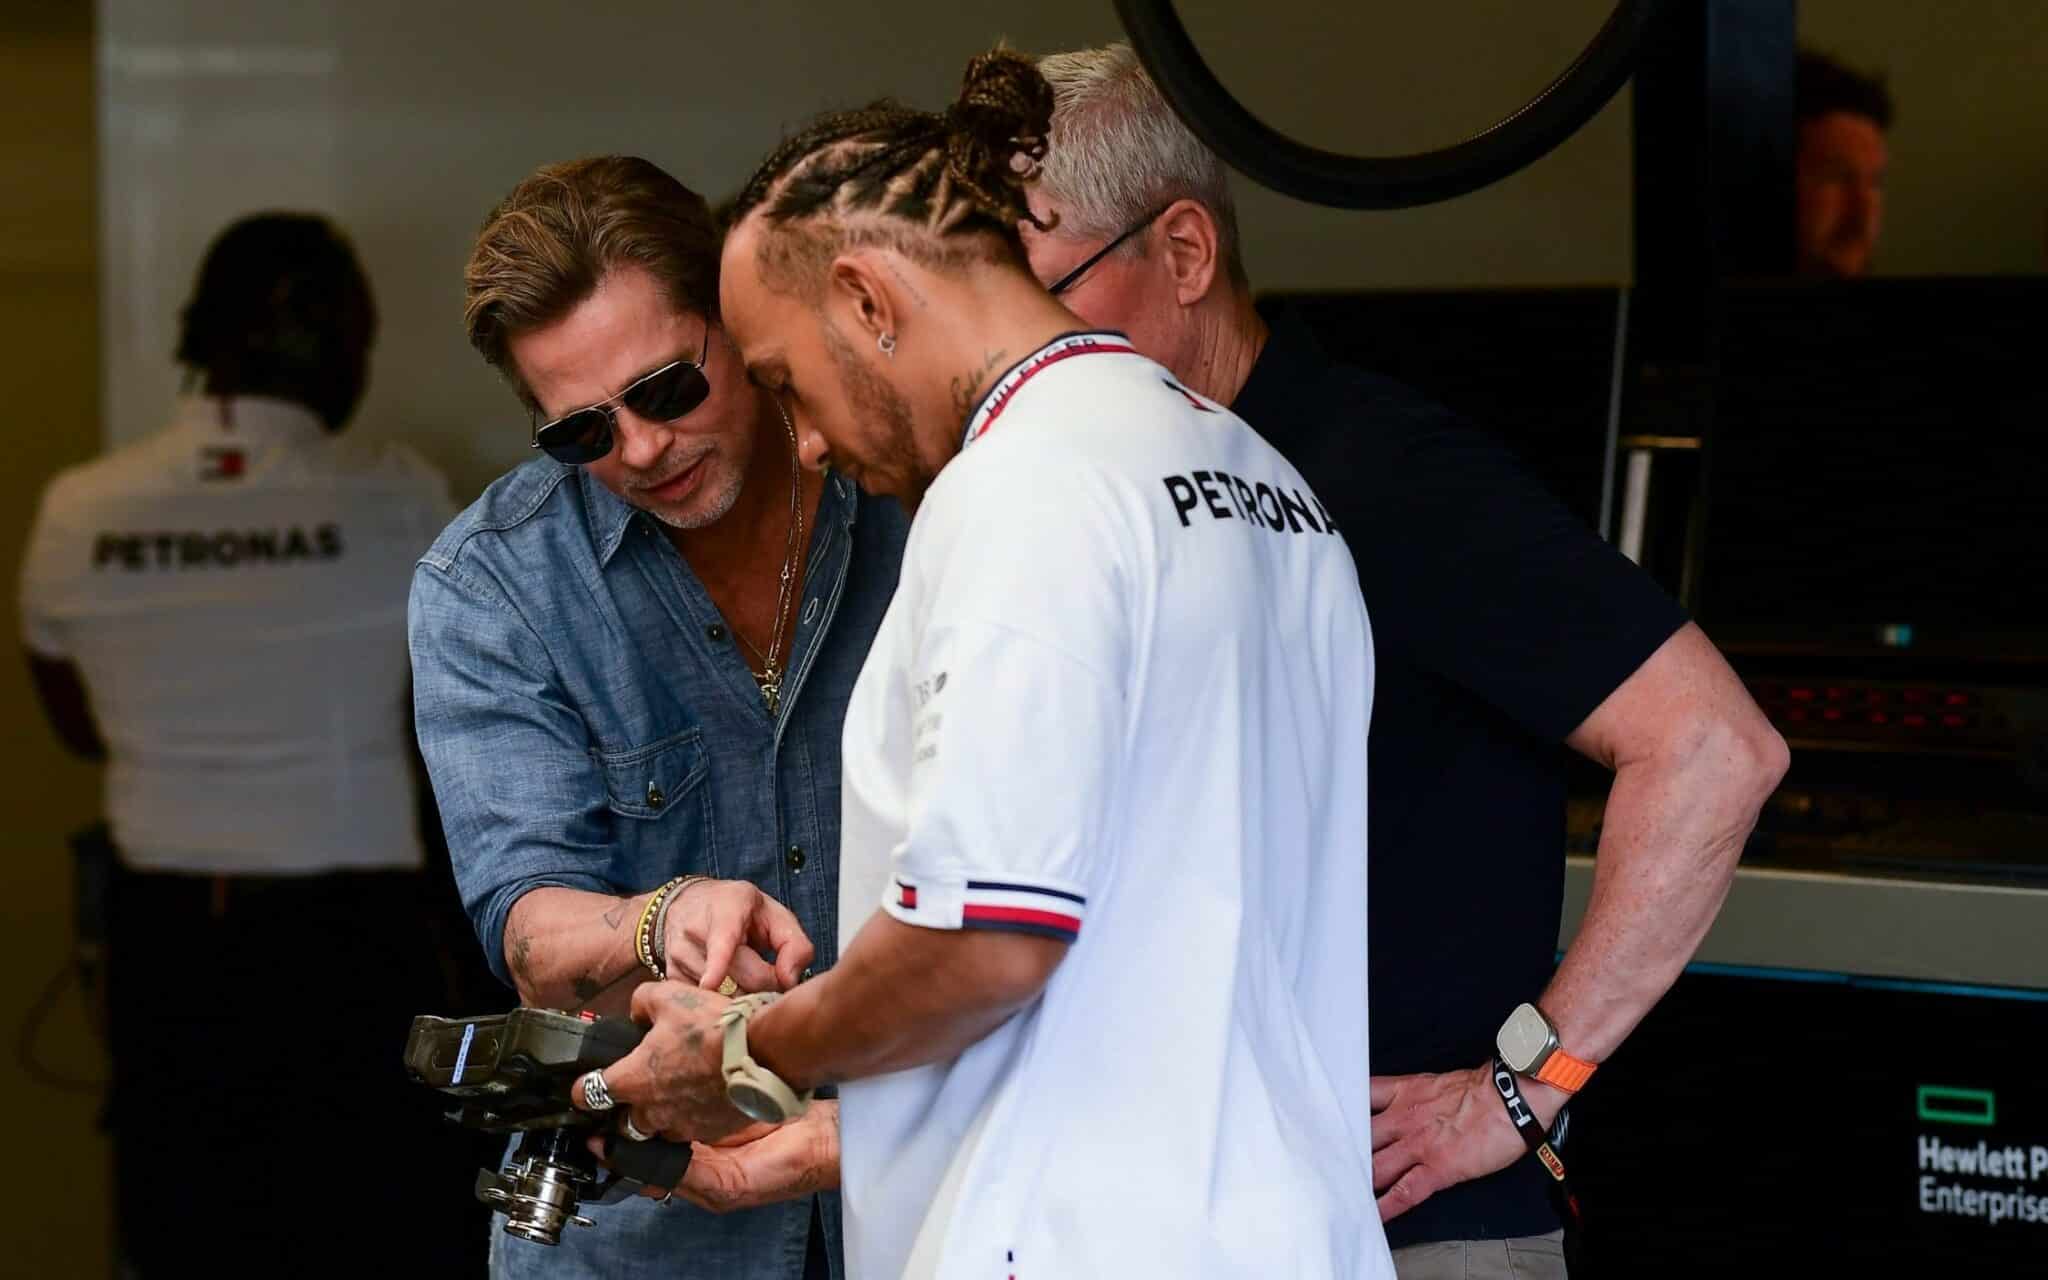 - Brad Pitt F1 takımının adı "Apex" olacak, aktör Paul Ricard'da gerçek bir F2 aracıyla antrenman yapıyor